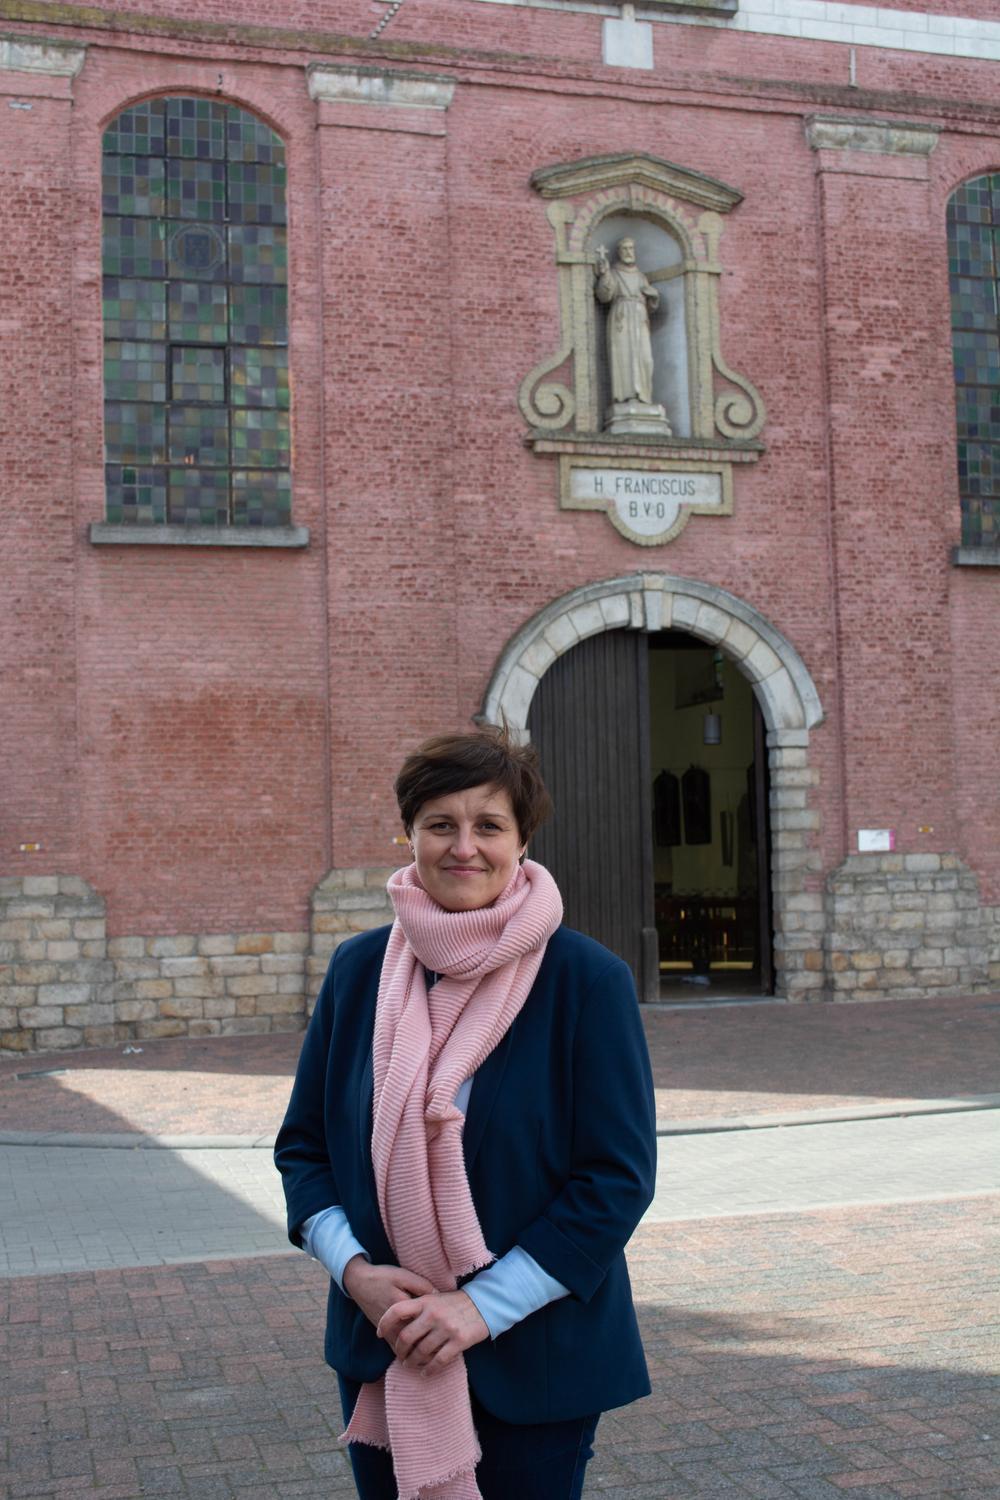 Schepen van Cultuur en Kerkfabriek Griet Vanryckeghem heeft goede moed op een snelle evolutie in het kerkenplan.